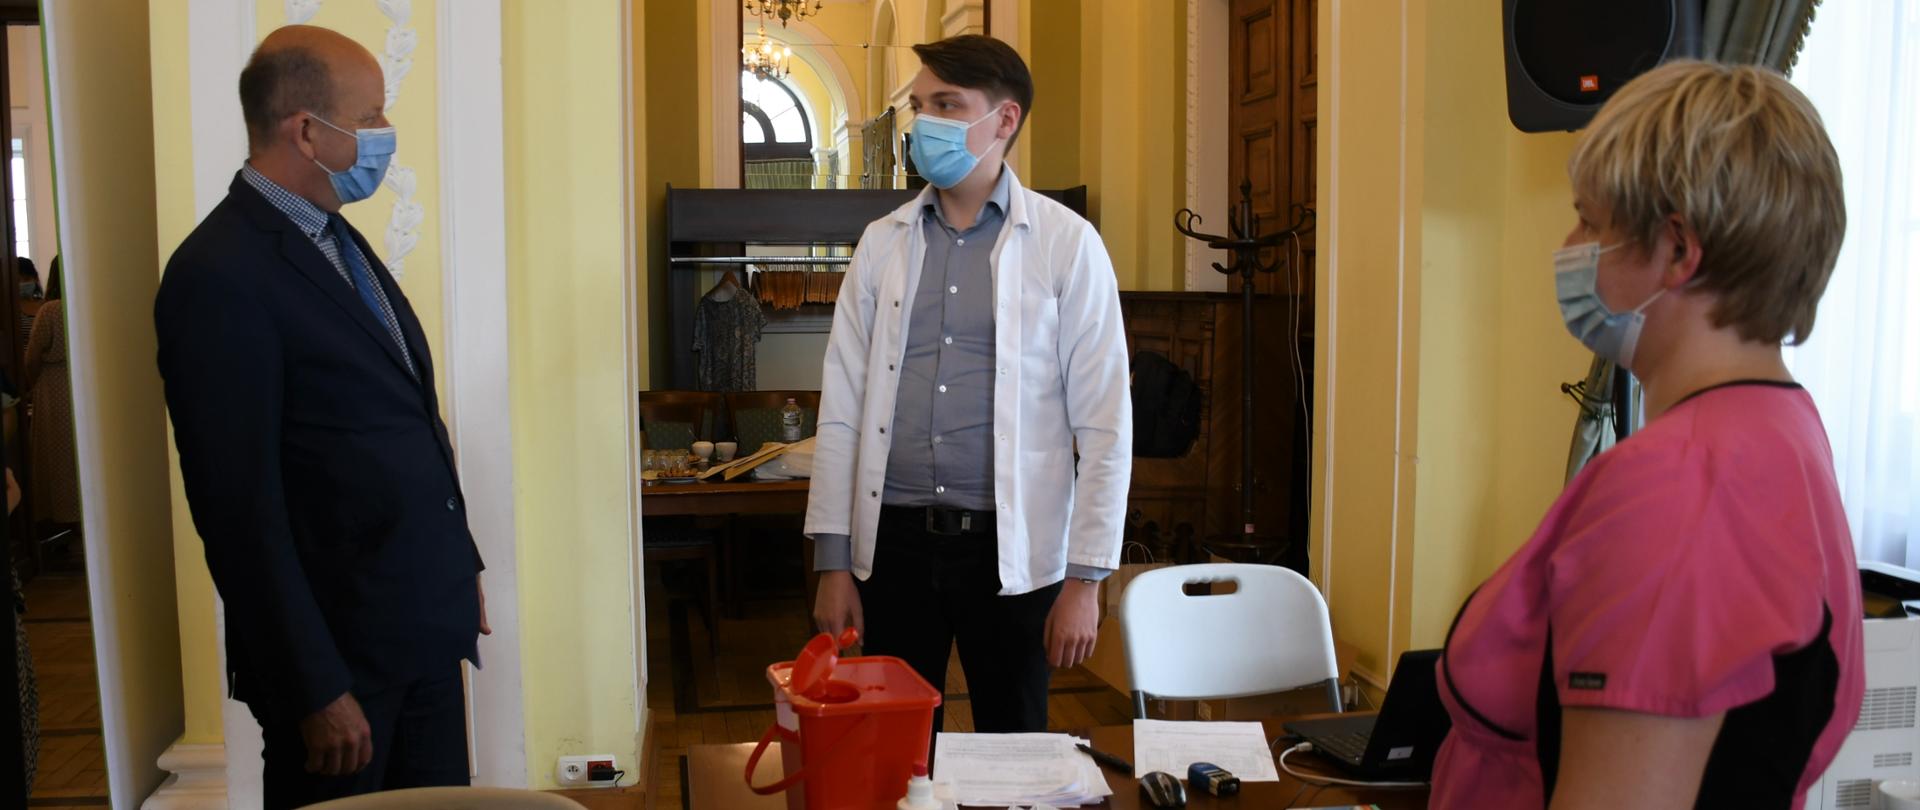 Od lewej strony: Wojewoda Mazowiecki rozmawiający z lekarzem, przed mężczyznami stoi biurko na którym leżą niezbędne rzeczy do wykonania szczepienia. Po prawej stronie w rogu pielęgniarka w różowym fartuchu. 